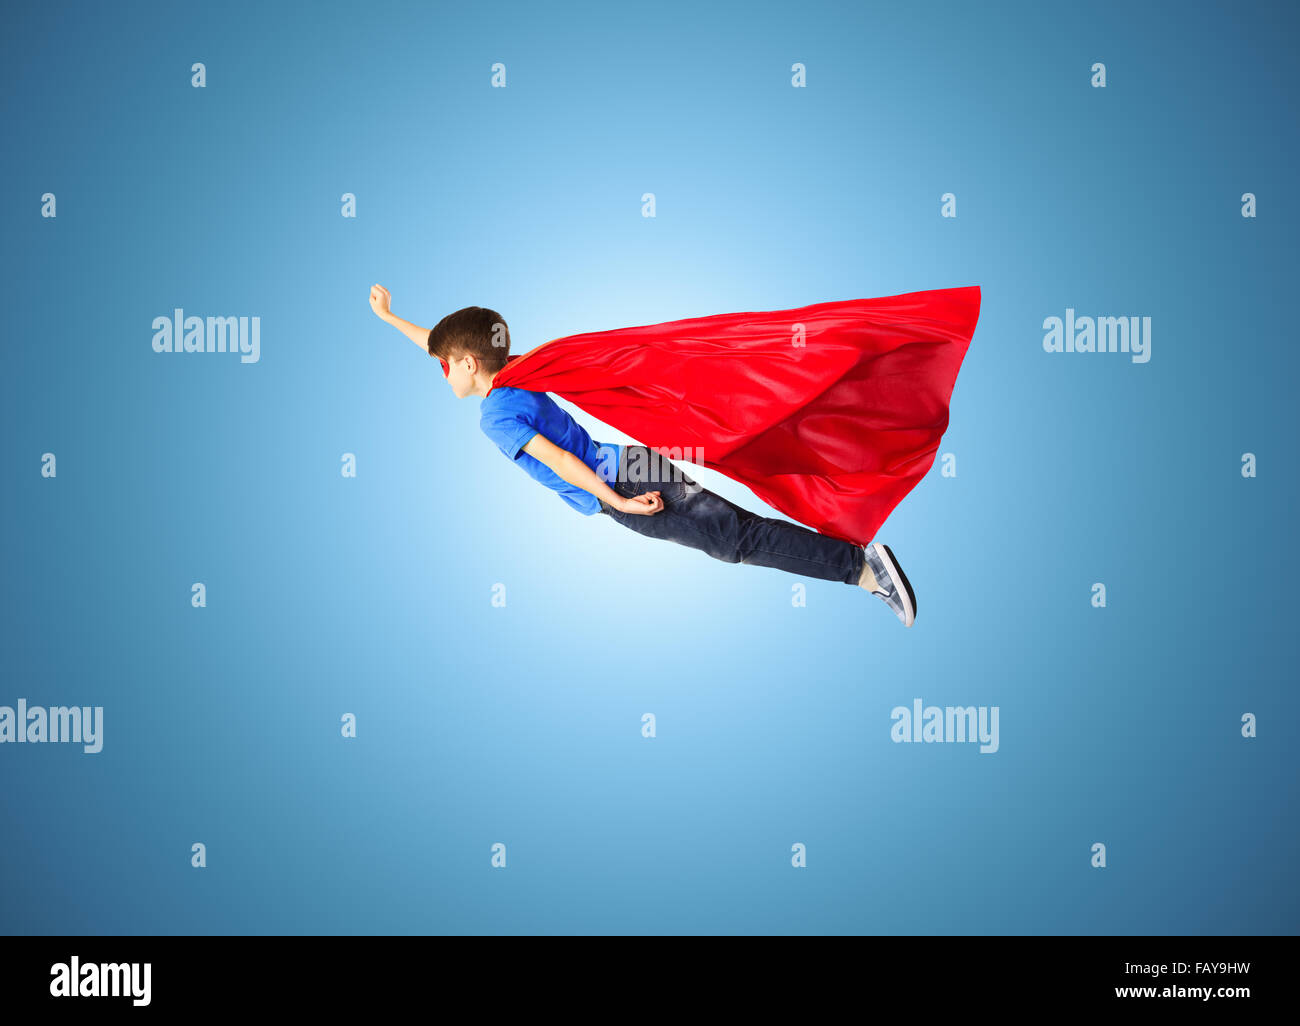 Junge im roten Superhelden Cape und Maske, die fliegen in der Luft Stockfoto